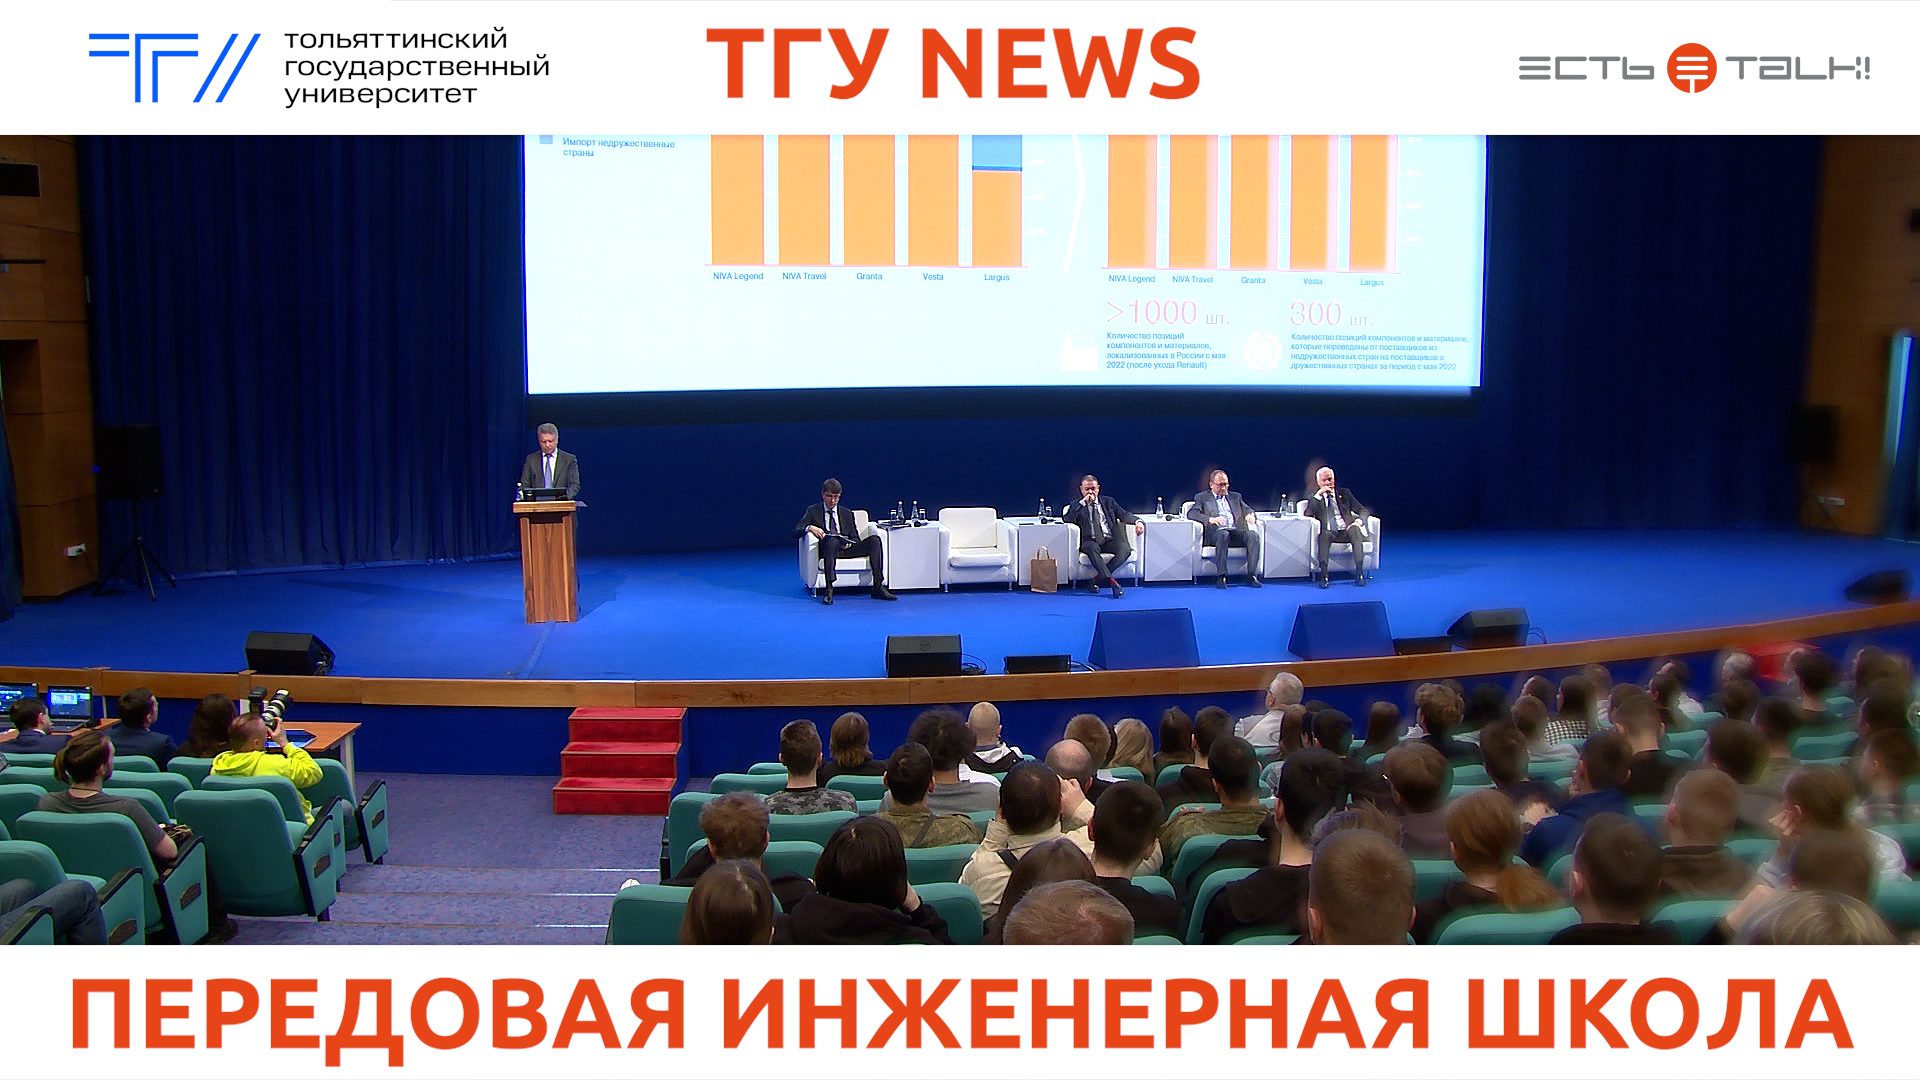 ТГУ News: Встреча студентов с руководством АВТОВАЗа, Тольятти и Тольяттинского госуниверситета